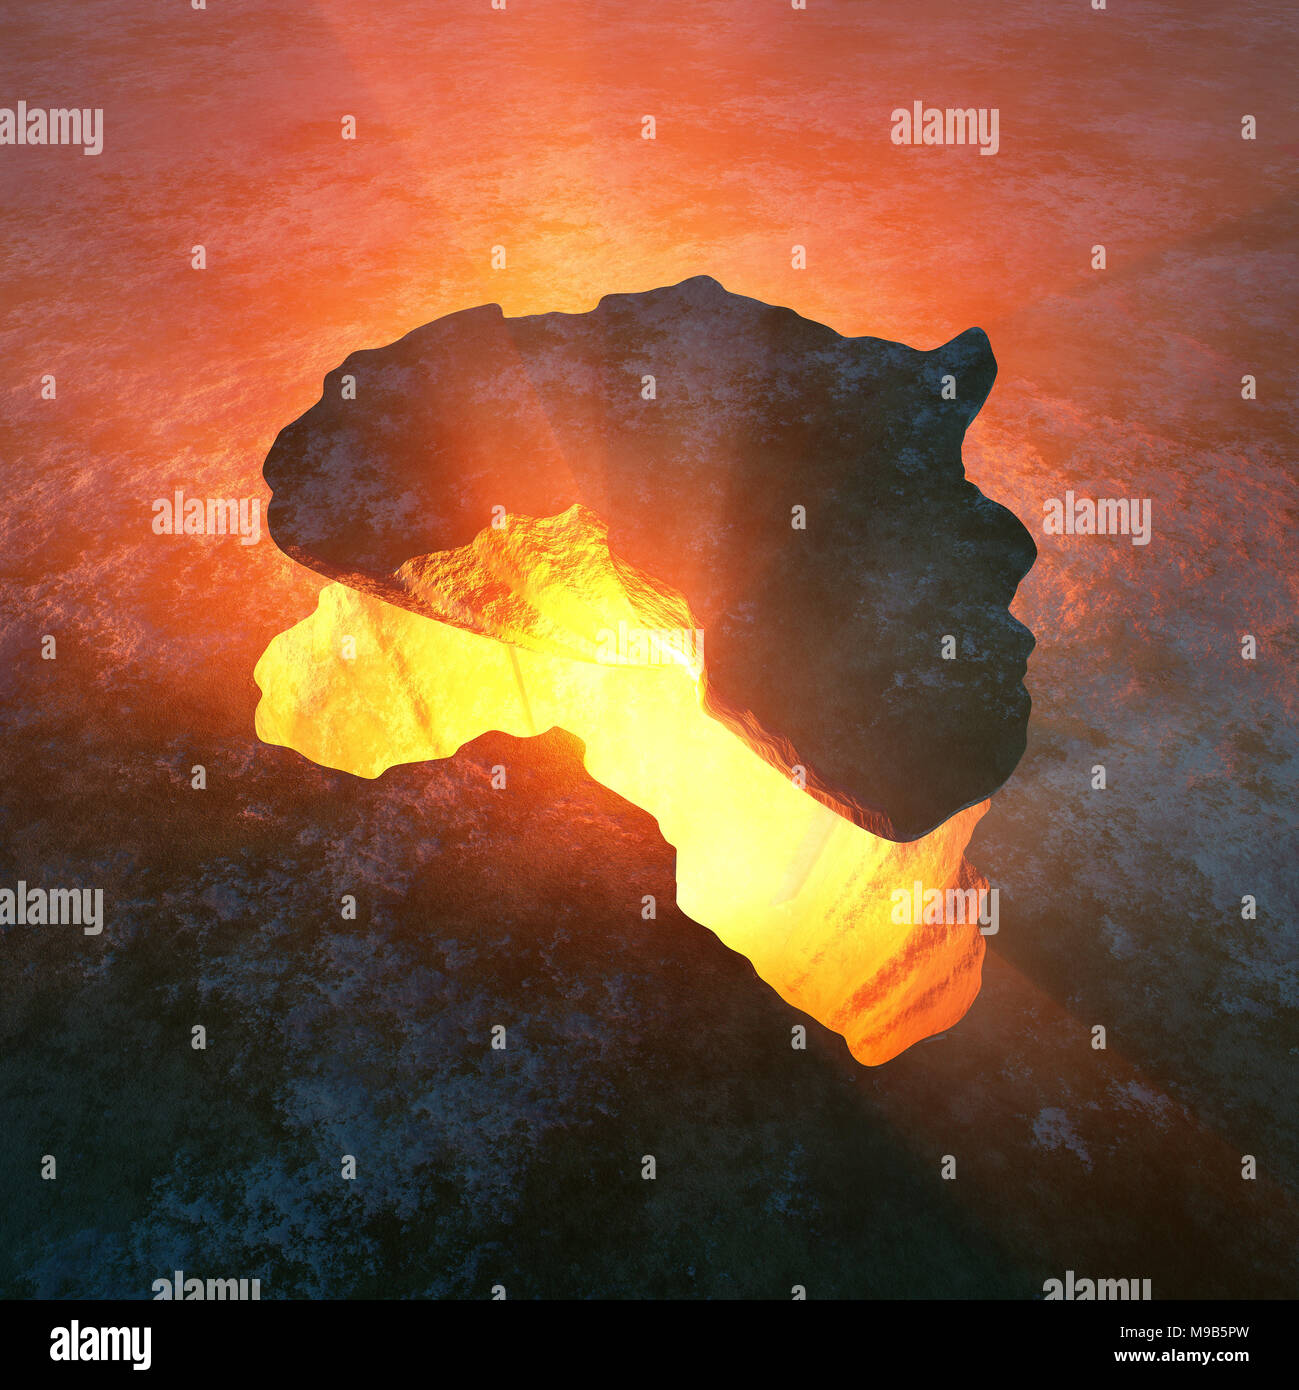 Kontinent von Afrika als Fels aus einem roten heißen Loch in der Erde gerissen. Konzeptionelle gerenderten 3D-Artwork Stockfoto